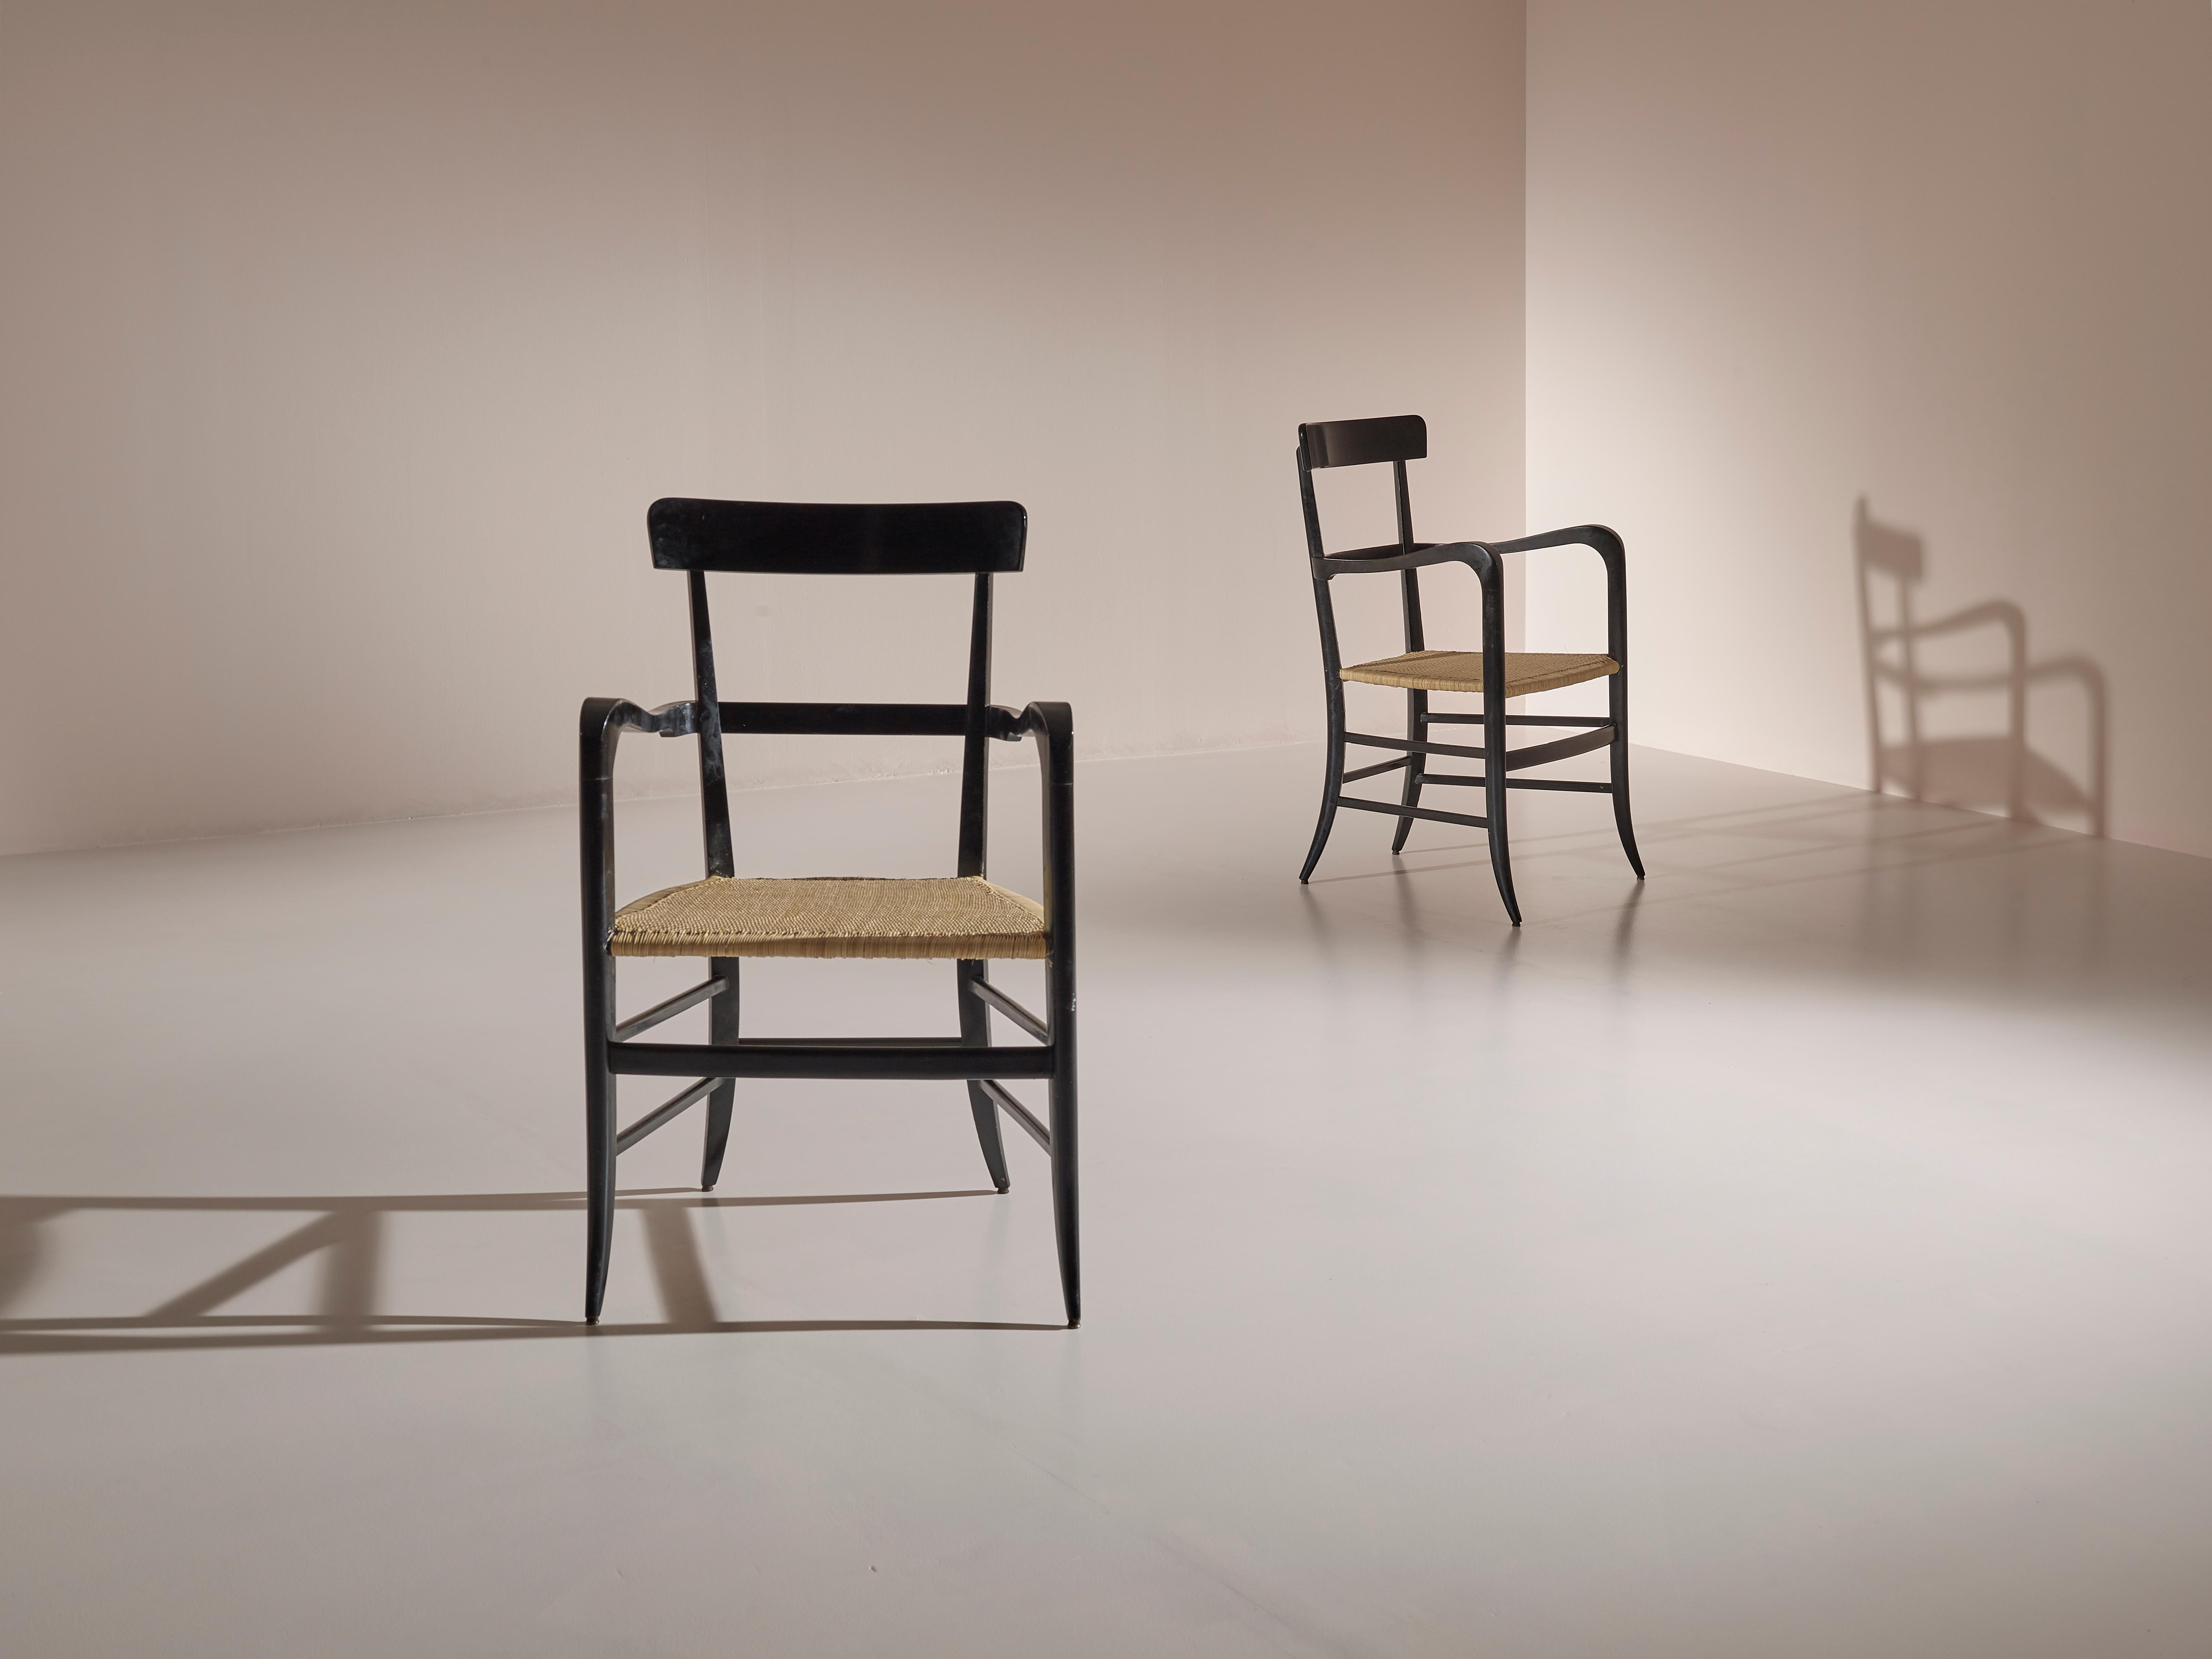 Seltenes und stilvolles Paar Chiavari-Sessel, hergestellt von dem erneuerten Kunsttischler Guido Chiappe in den frühen 1960er Jahren.
Dieses Modell wurde speziell für den Saal des Hotels Continental in Santa Margherita Ligure (Genua) für eine